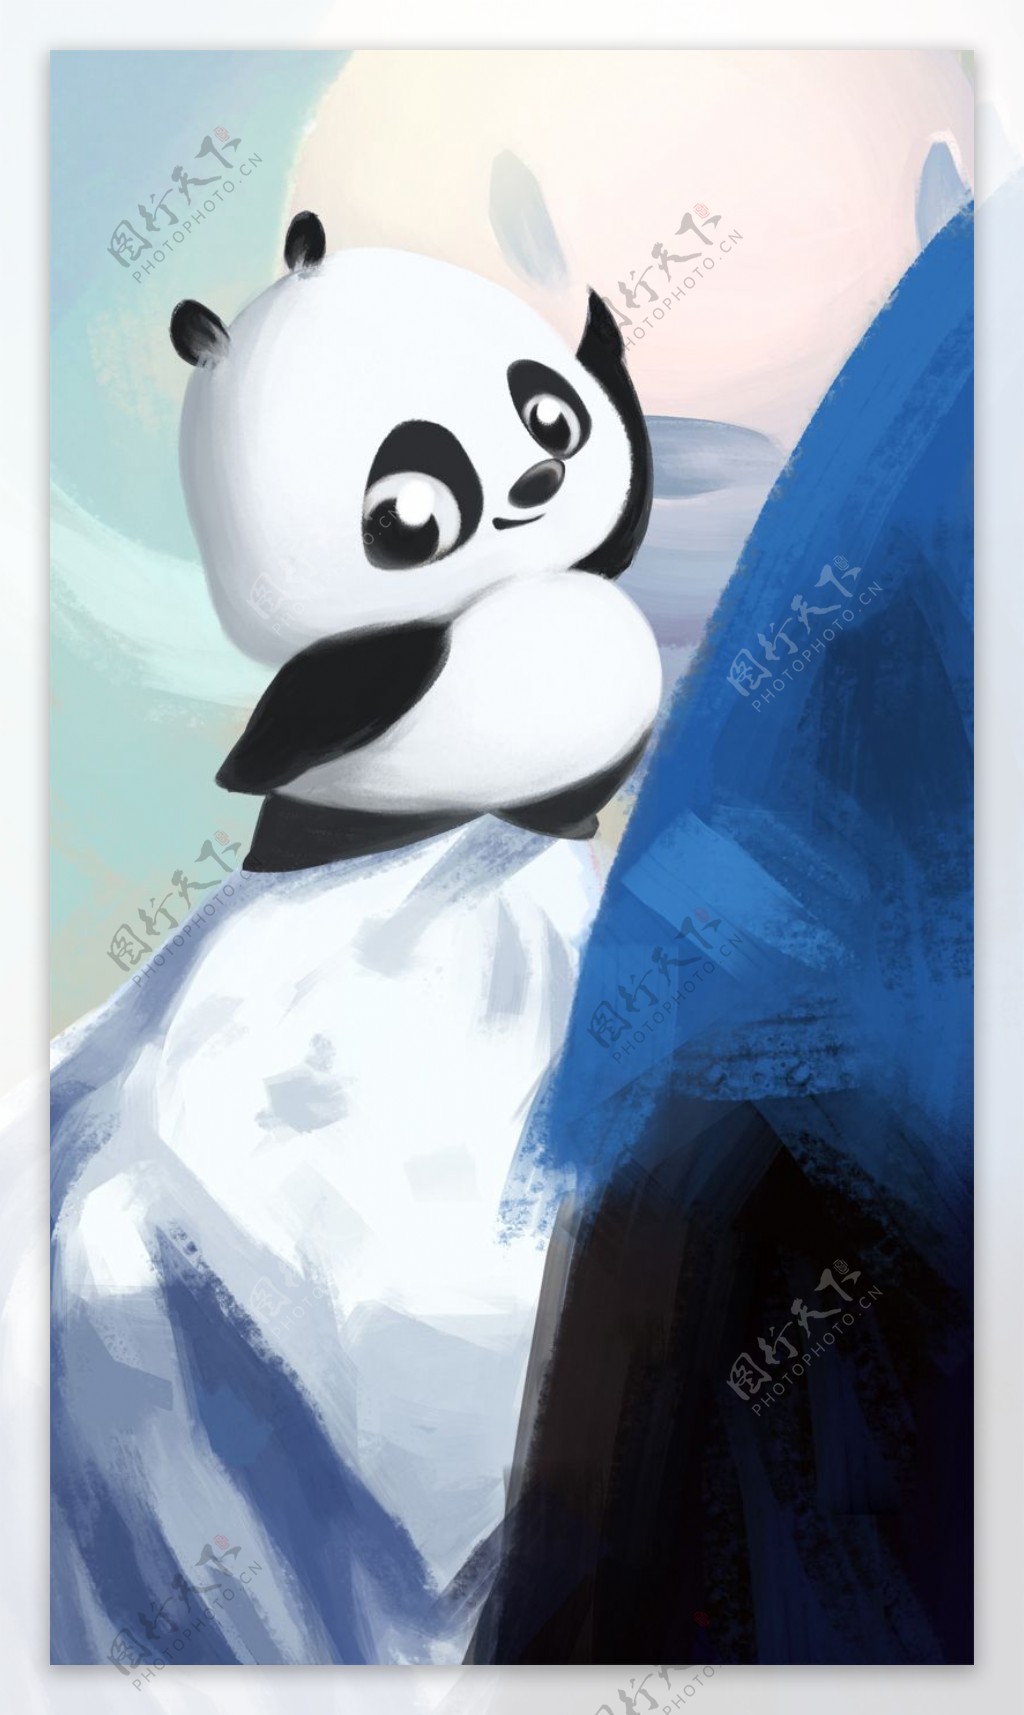 位图插画师simoninn中国熊猫艺术效果免费素材